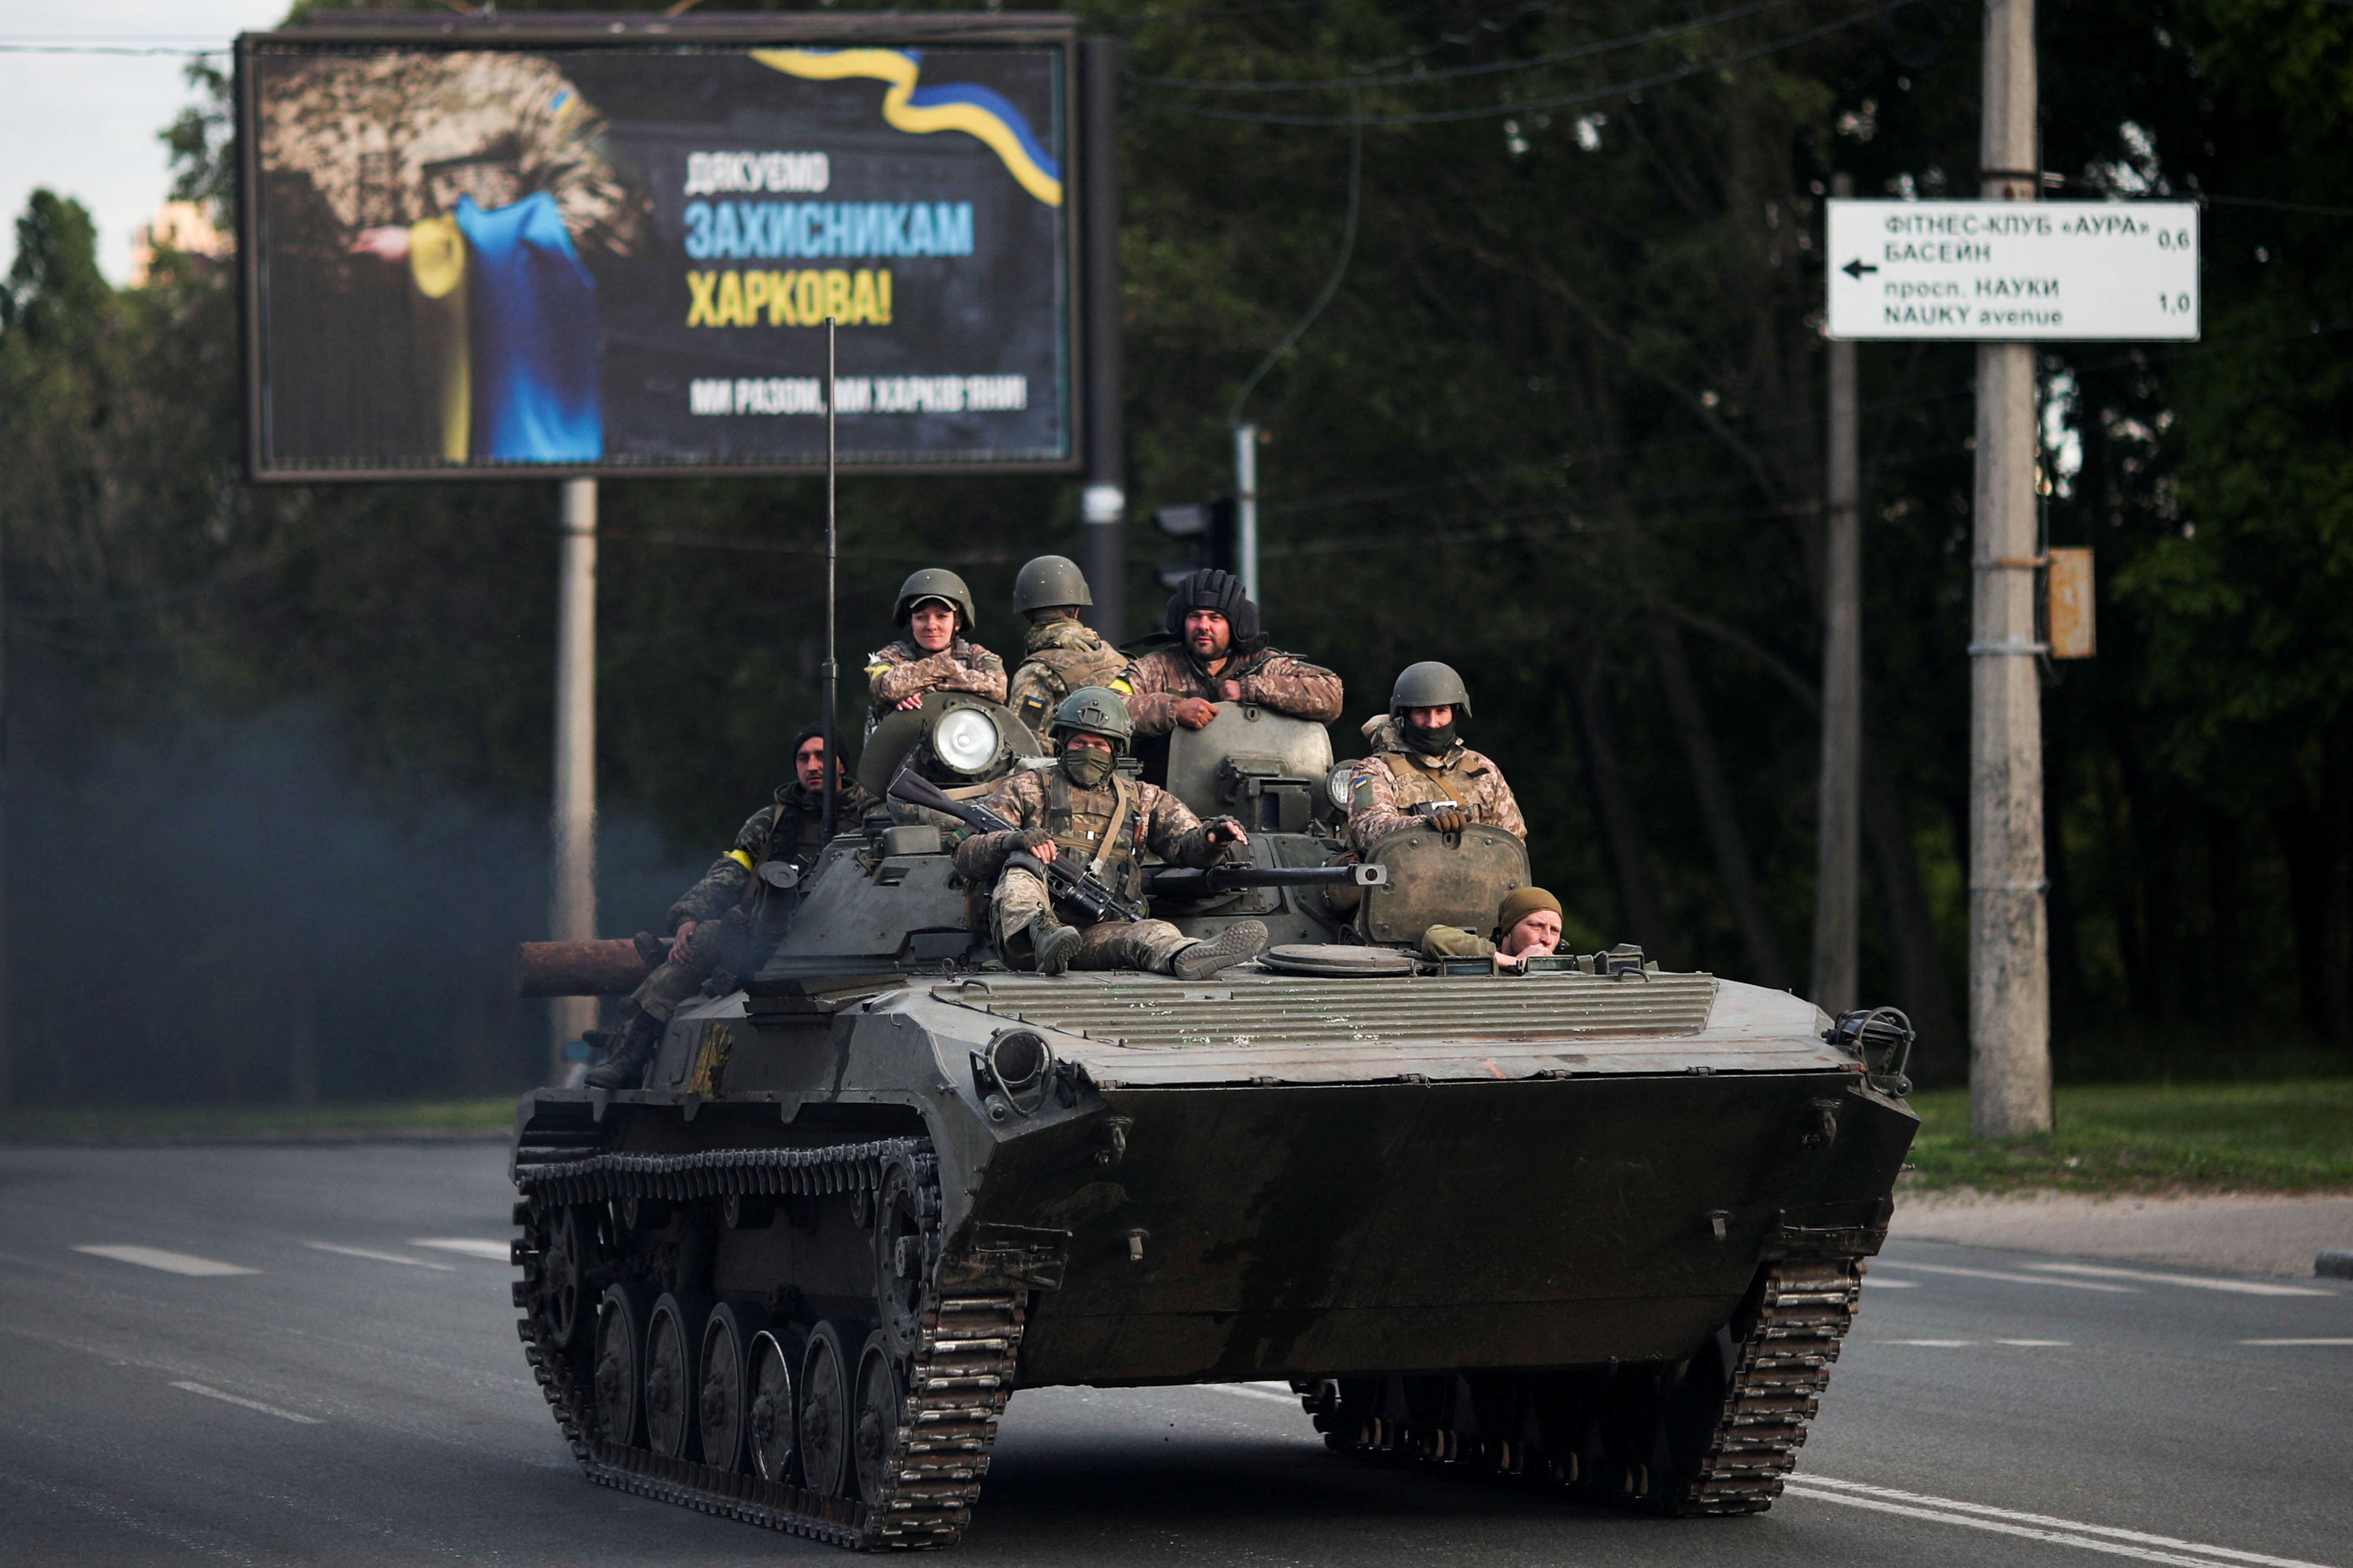 Ukrainian military in the city of Kharkiv